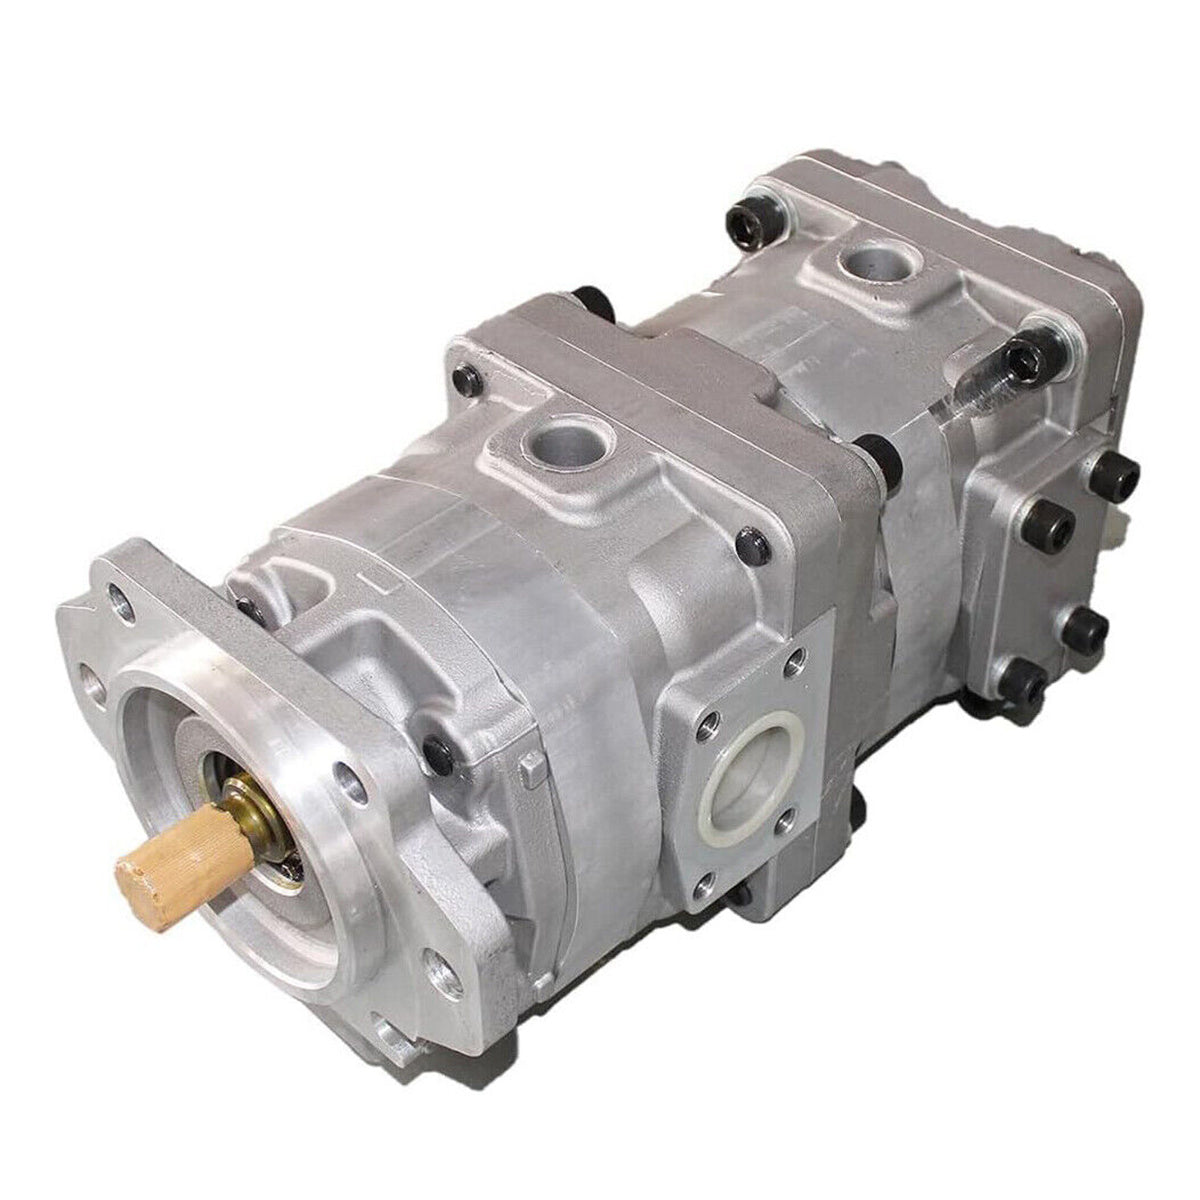 705-51-30600 Hydraulic Pump for Komatsu Wheel Loader WA380-5 